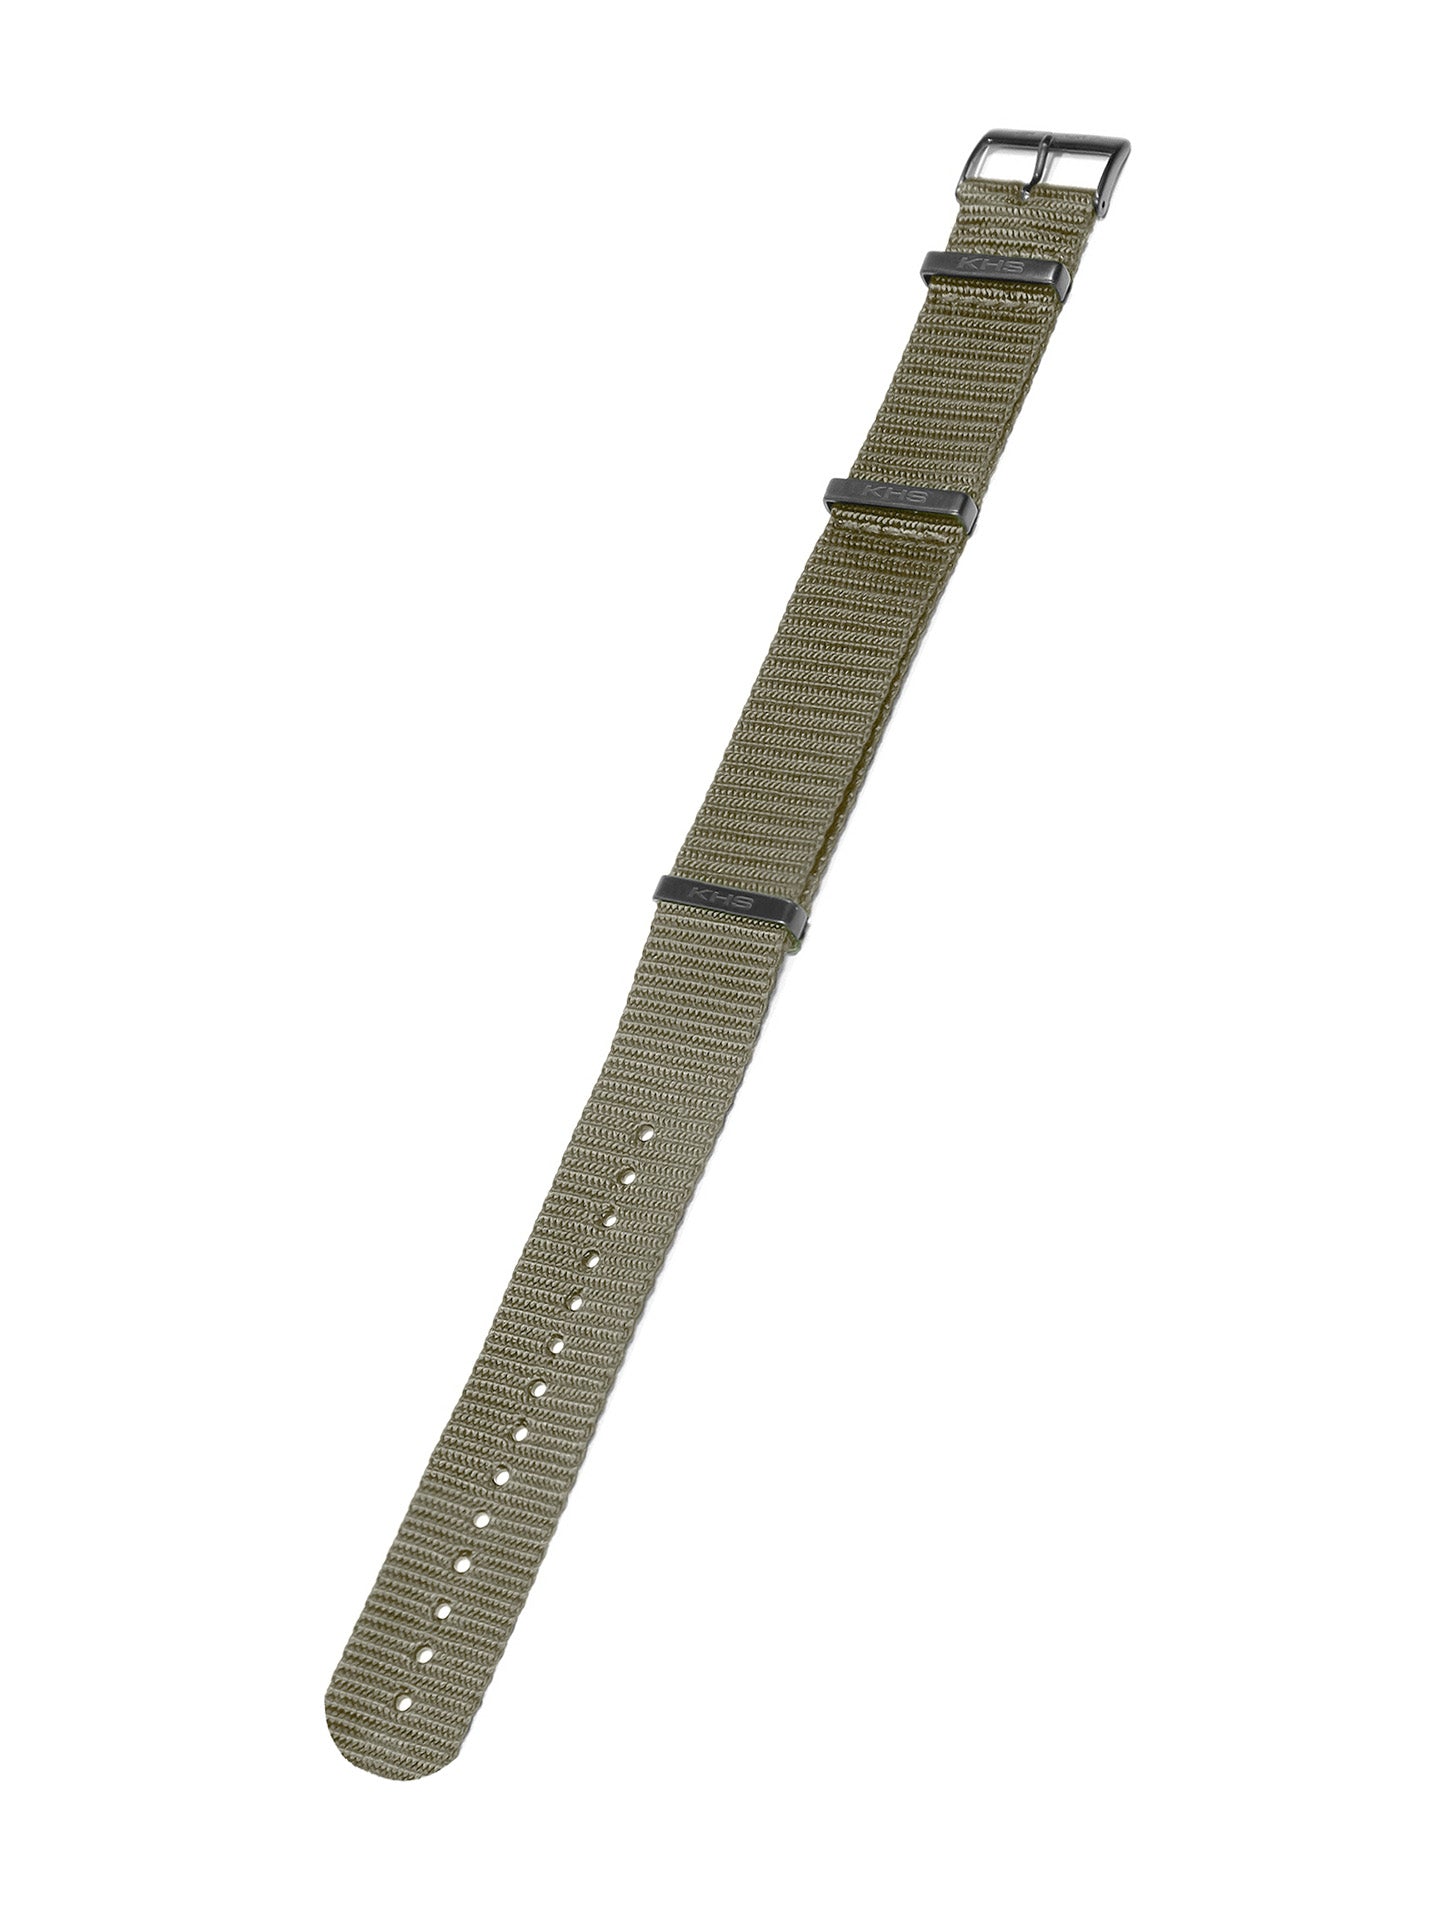 Natoband Steingrau-Oliv 22mm